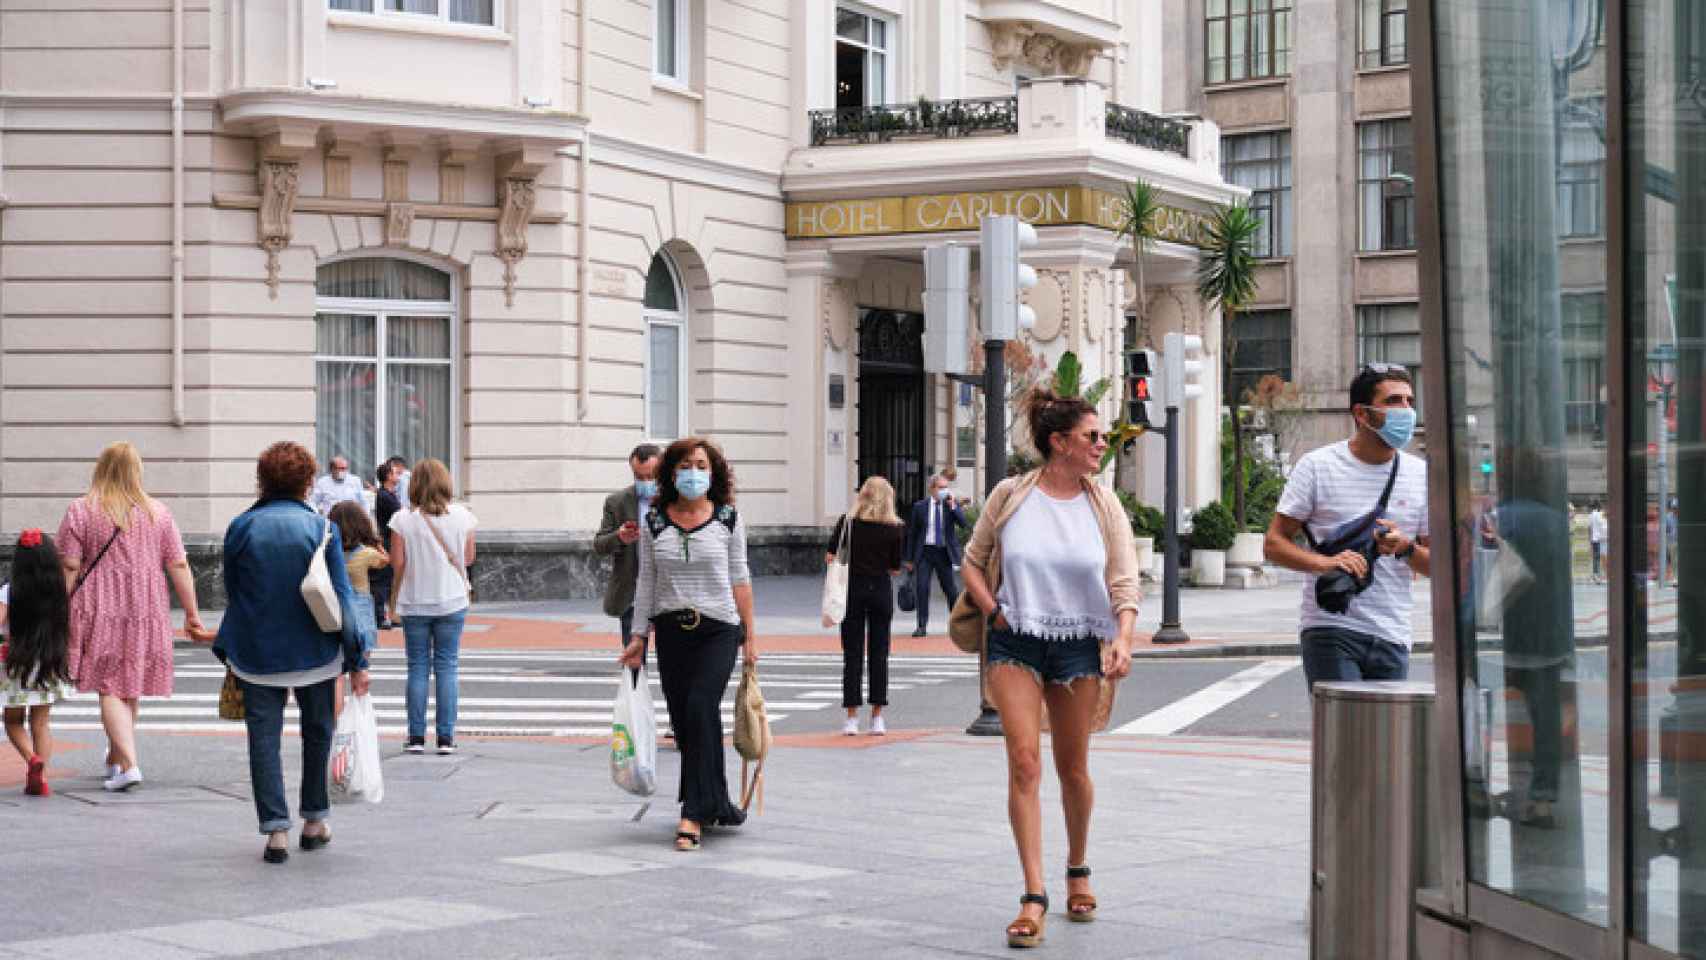 Individuos pasean cerca del Hotel Carlton, en Bilbao.